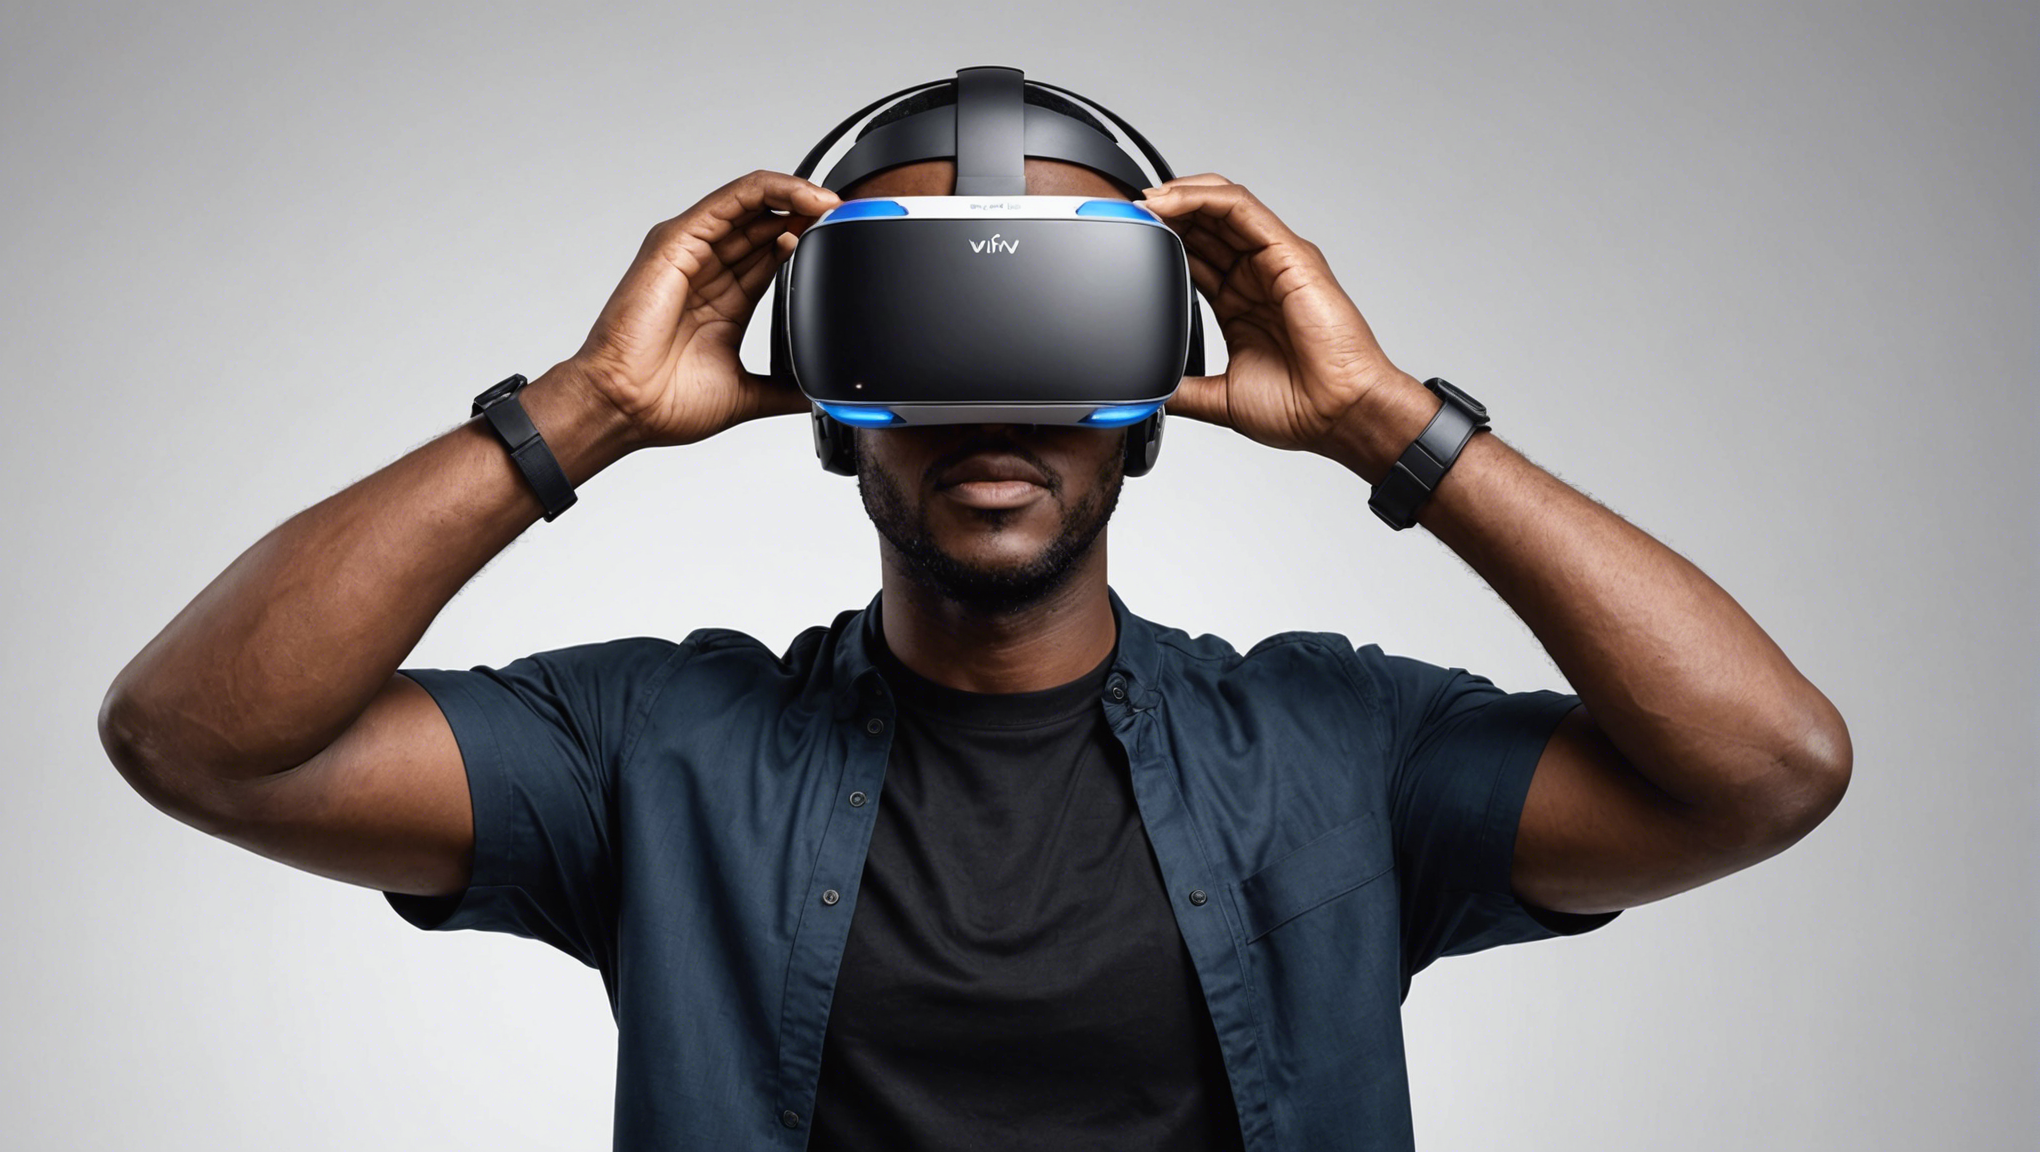 découvrez le prix actuel du casque vr apple et plongez dans une expérience de réalité virtuelle immersive.